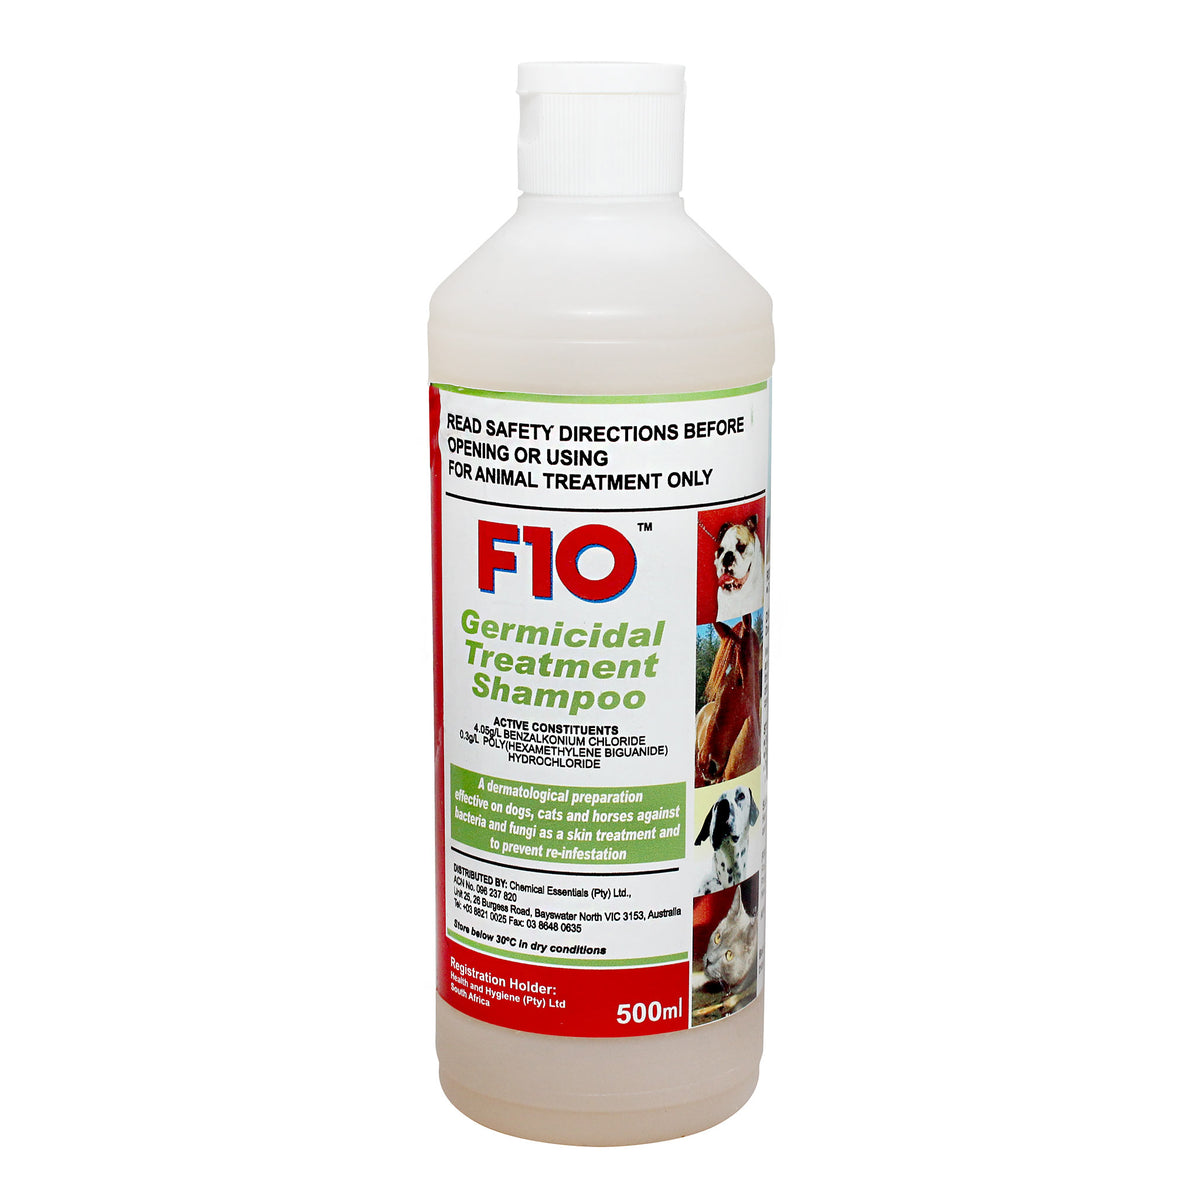 F10 Germicidal Shampoo